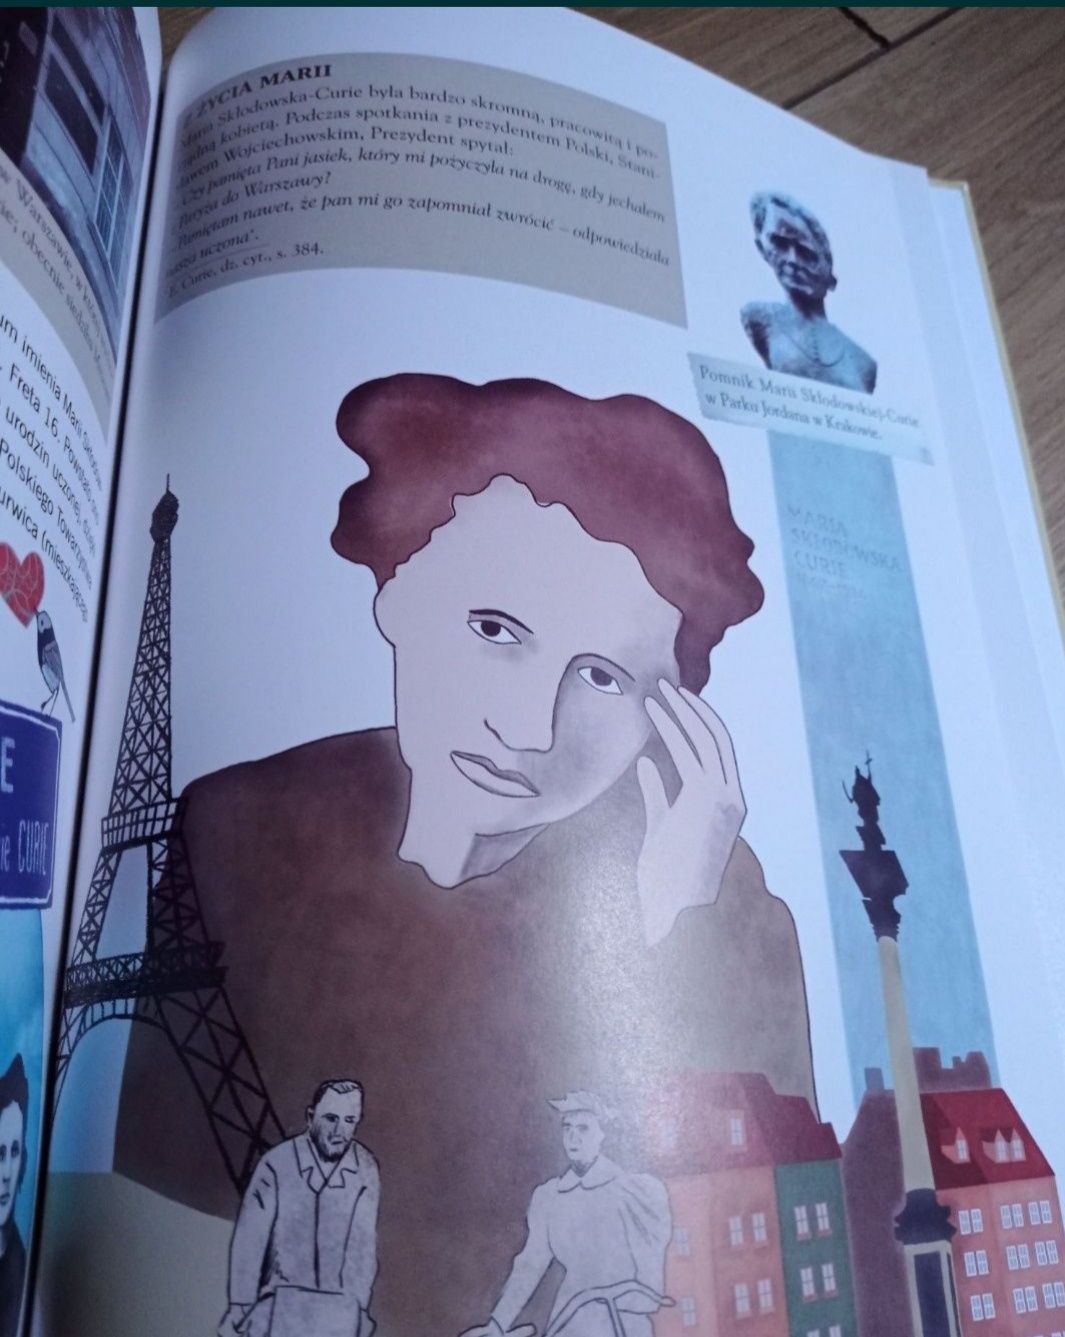 Opowieść o Marii Curie-Skłodowskiej
Książka prezentuje najważniejsze i